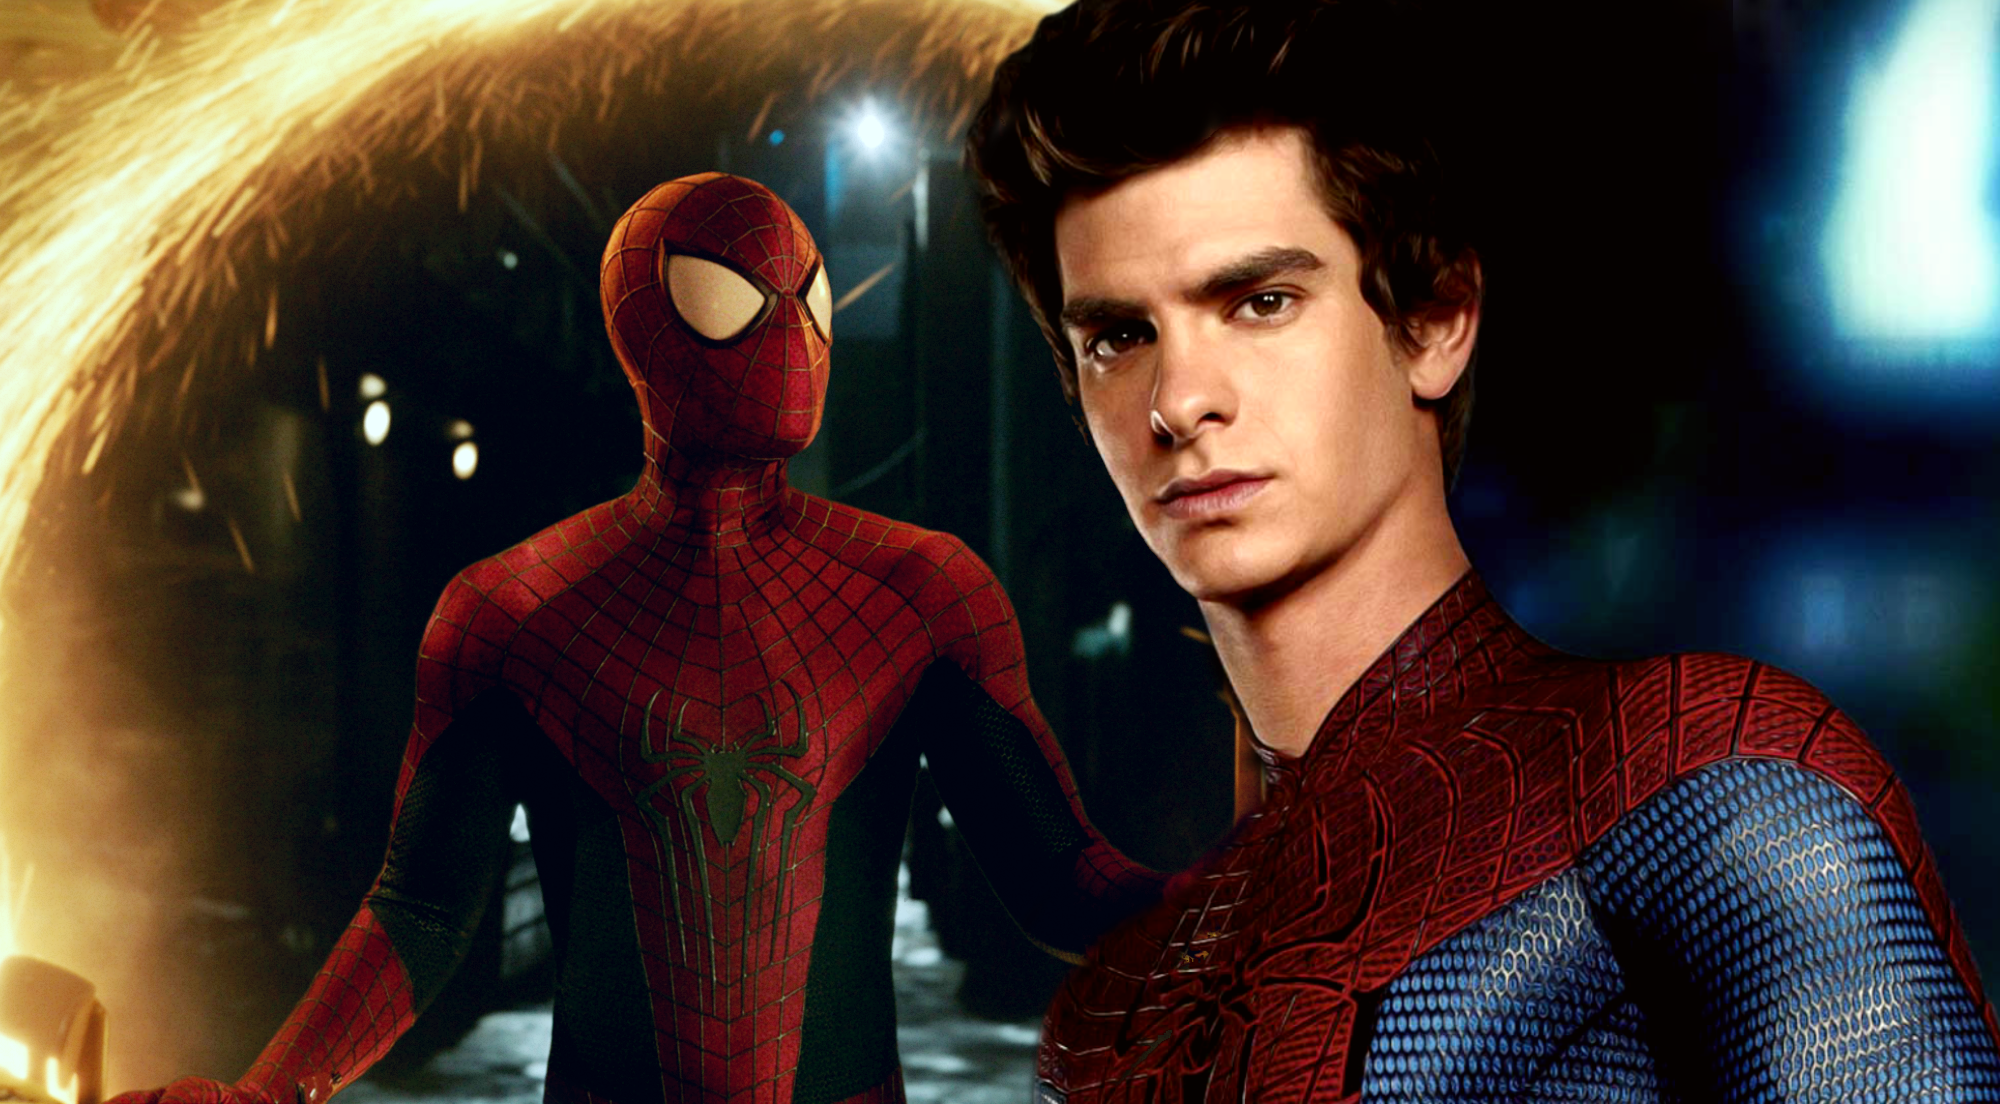 La nueva promoción de No Way Home hace que los fanáticos especulen sobre The Amazing Spider-Man 3